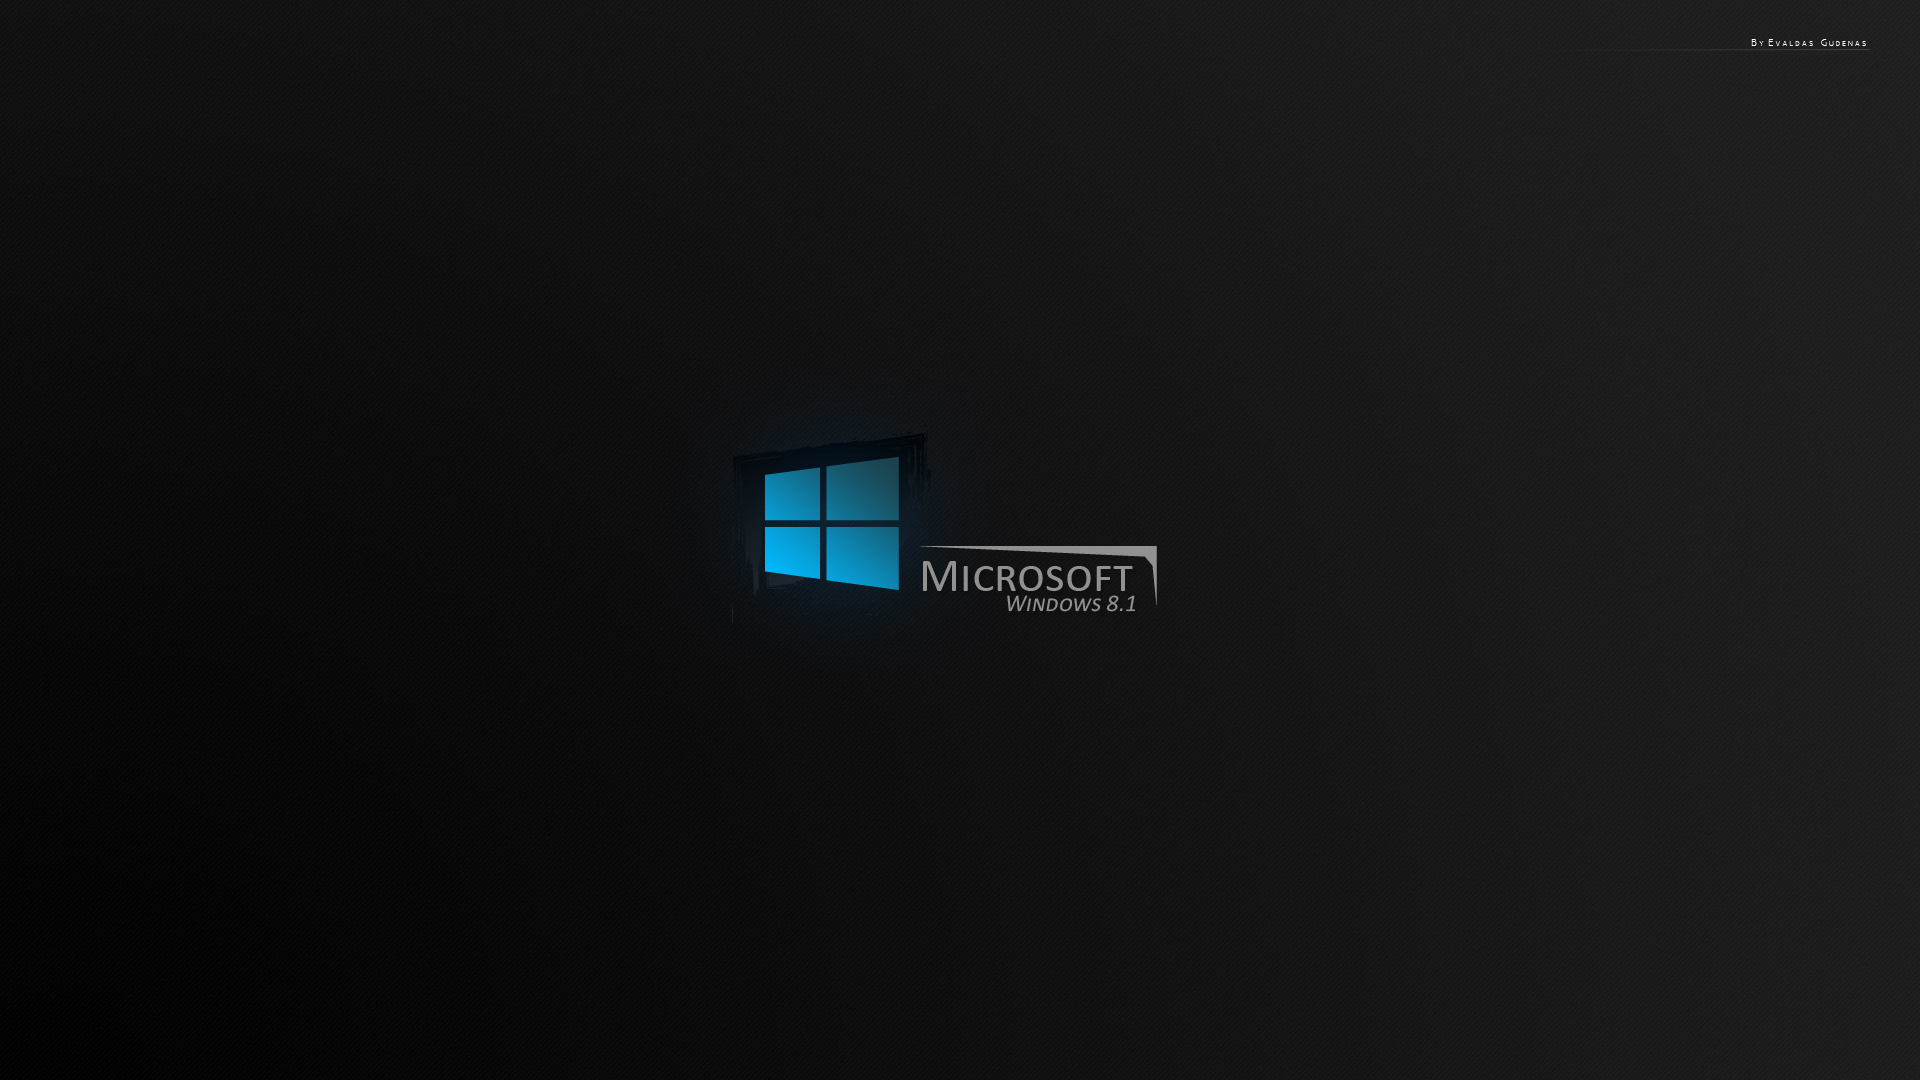 Hình nền Windows 8.1 miễn phí: Những hình ảnh tuyệt đẹp và mang tính độc đáo chắc chắn sẽ khiến bạn thích thú. Hình nền Windows 8.1 miễn phí được thiết kế tinh tế, độ phân giải cao và đầy sáng tạo, để bạn có thể dễ dàng tùy chỉnh và thích nghi với mọi phong cách.